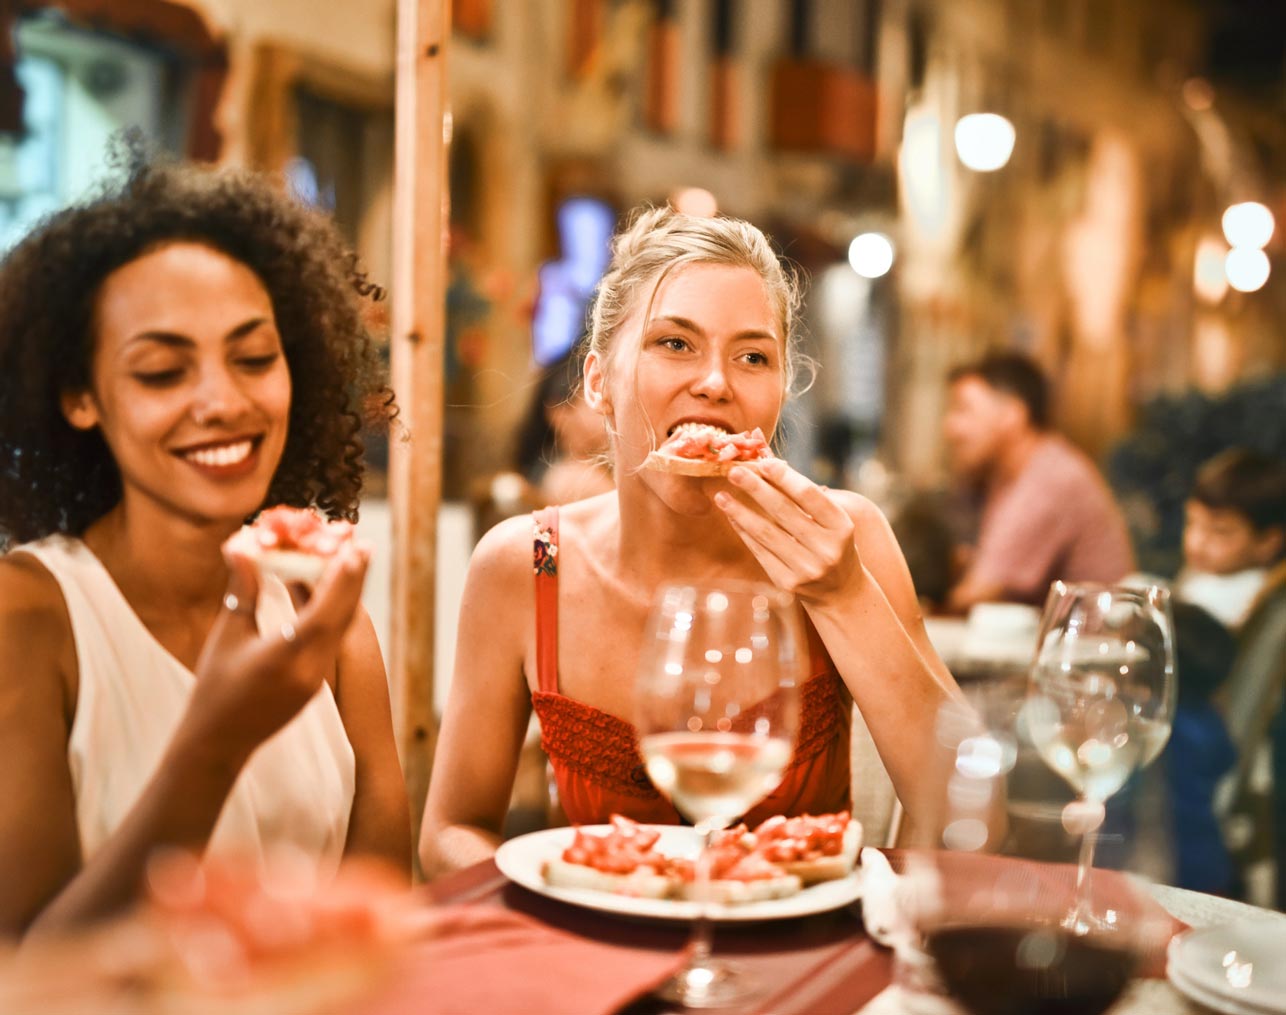 Mulheres comendo em restaurante